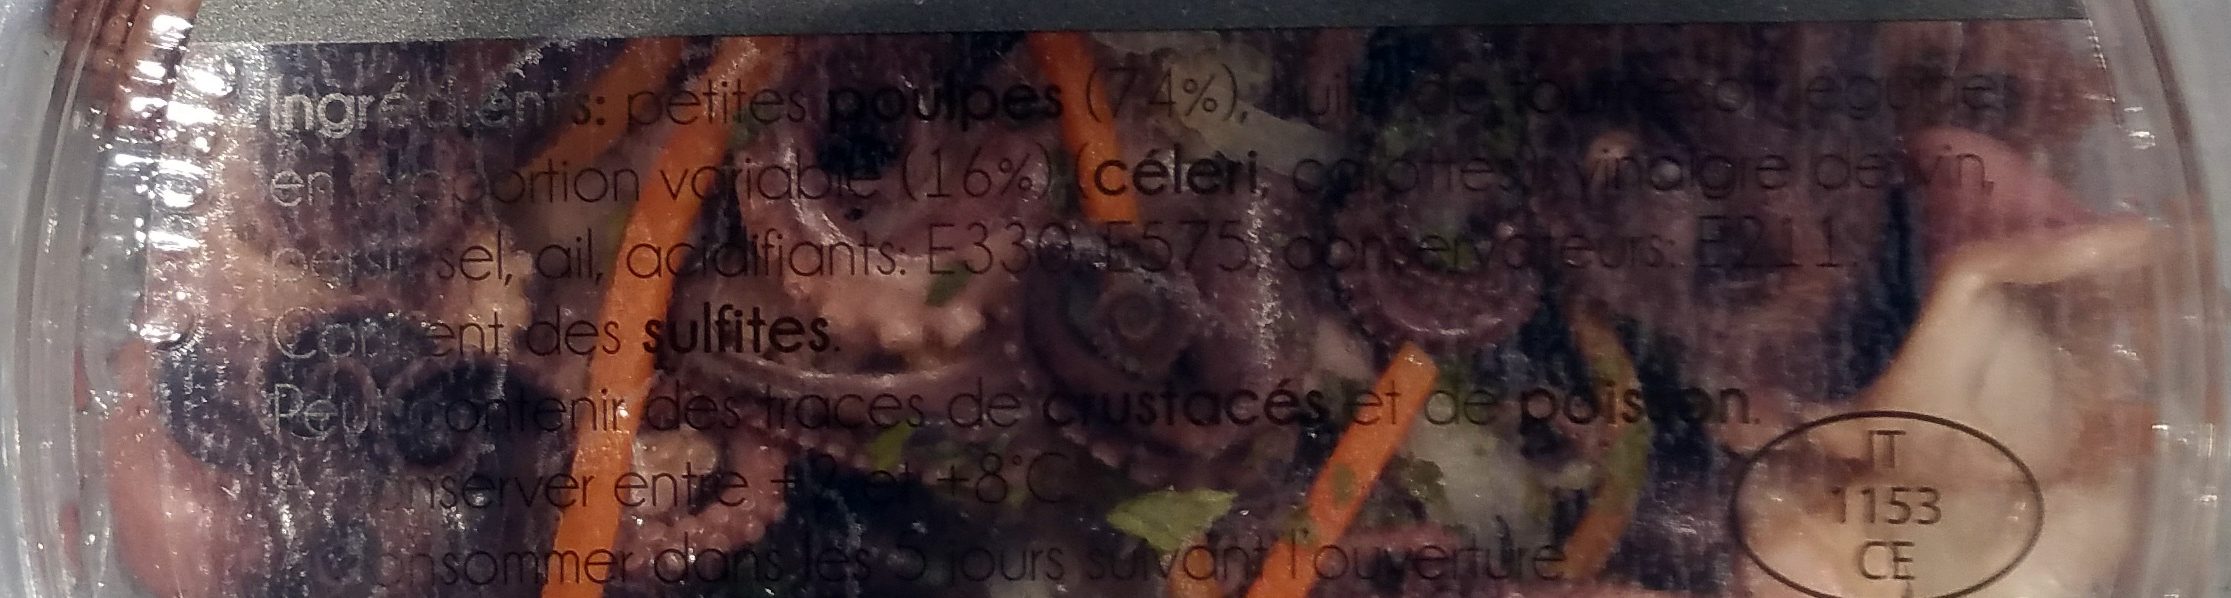 Salade de Poulpes Piccoli à l'Huile - Ingredients - fr